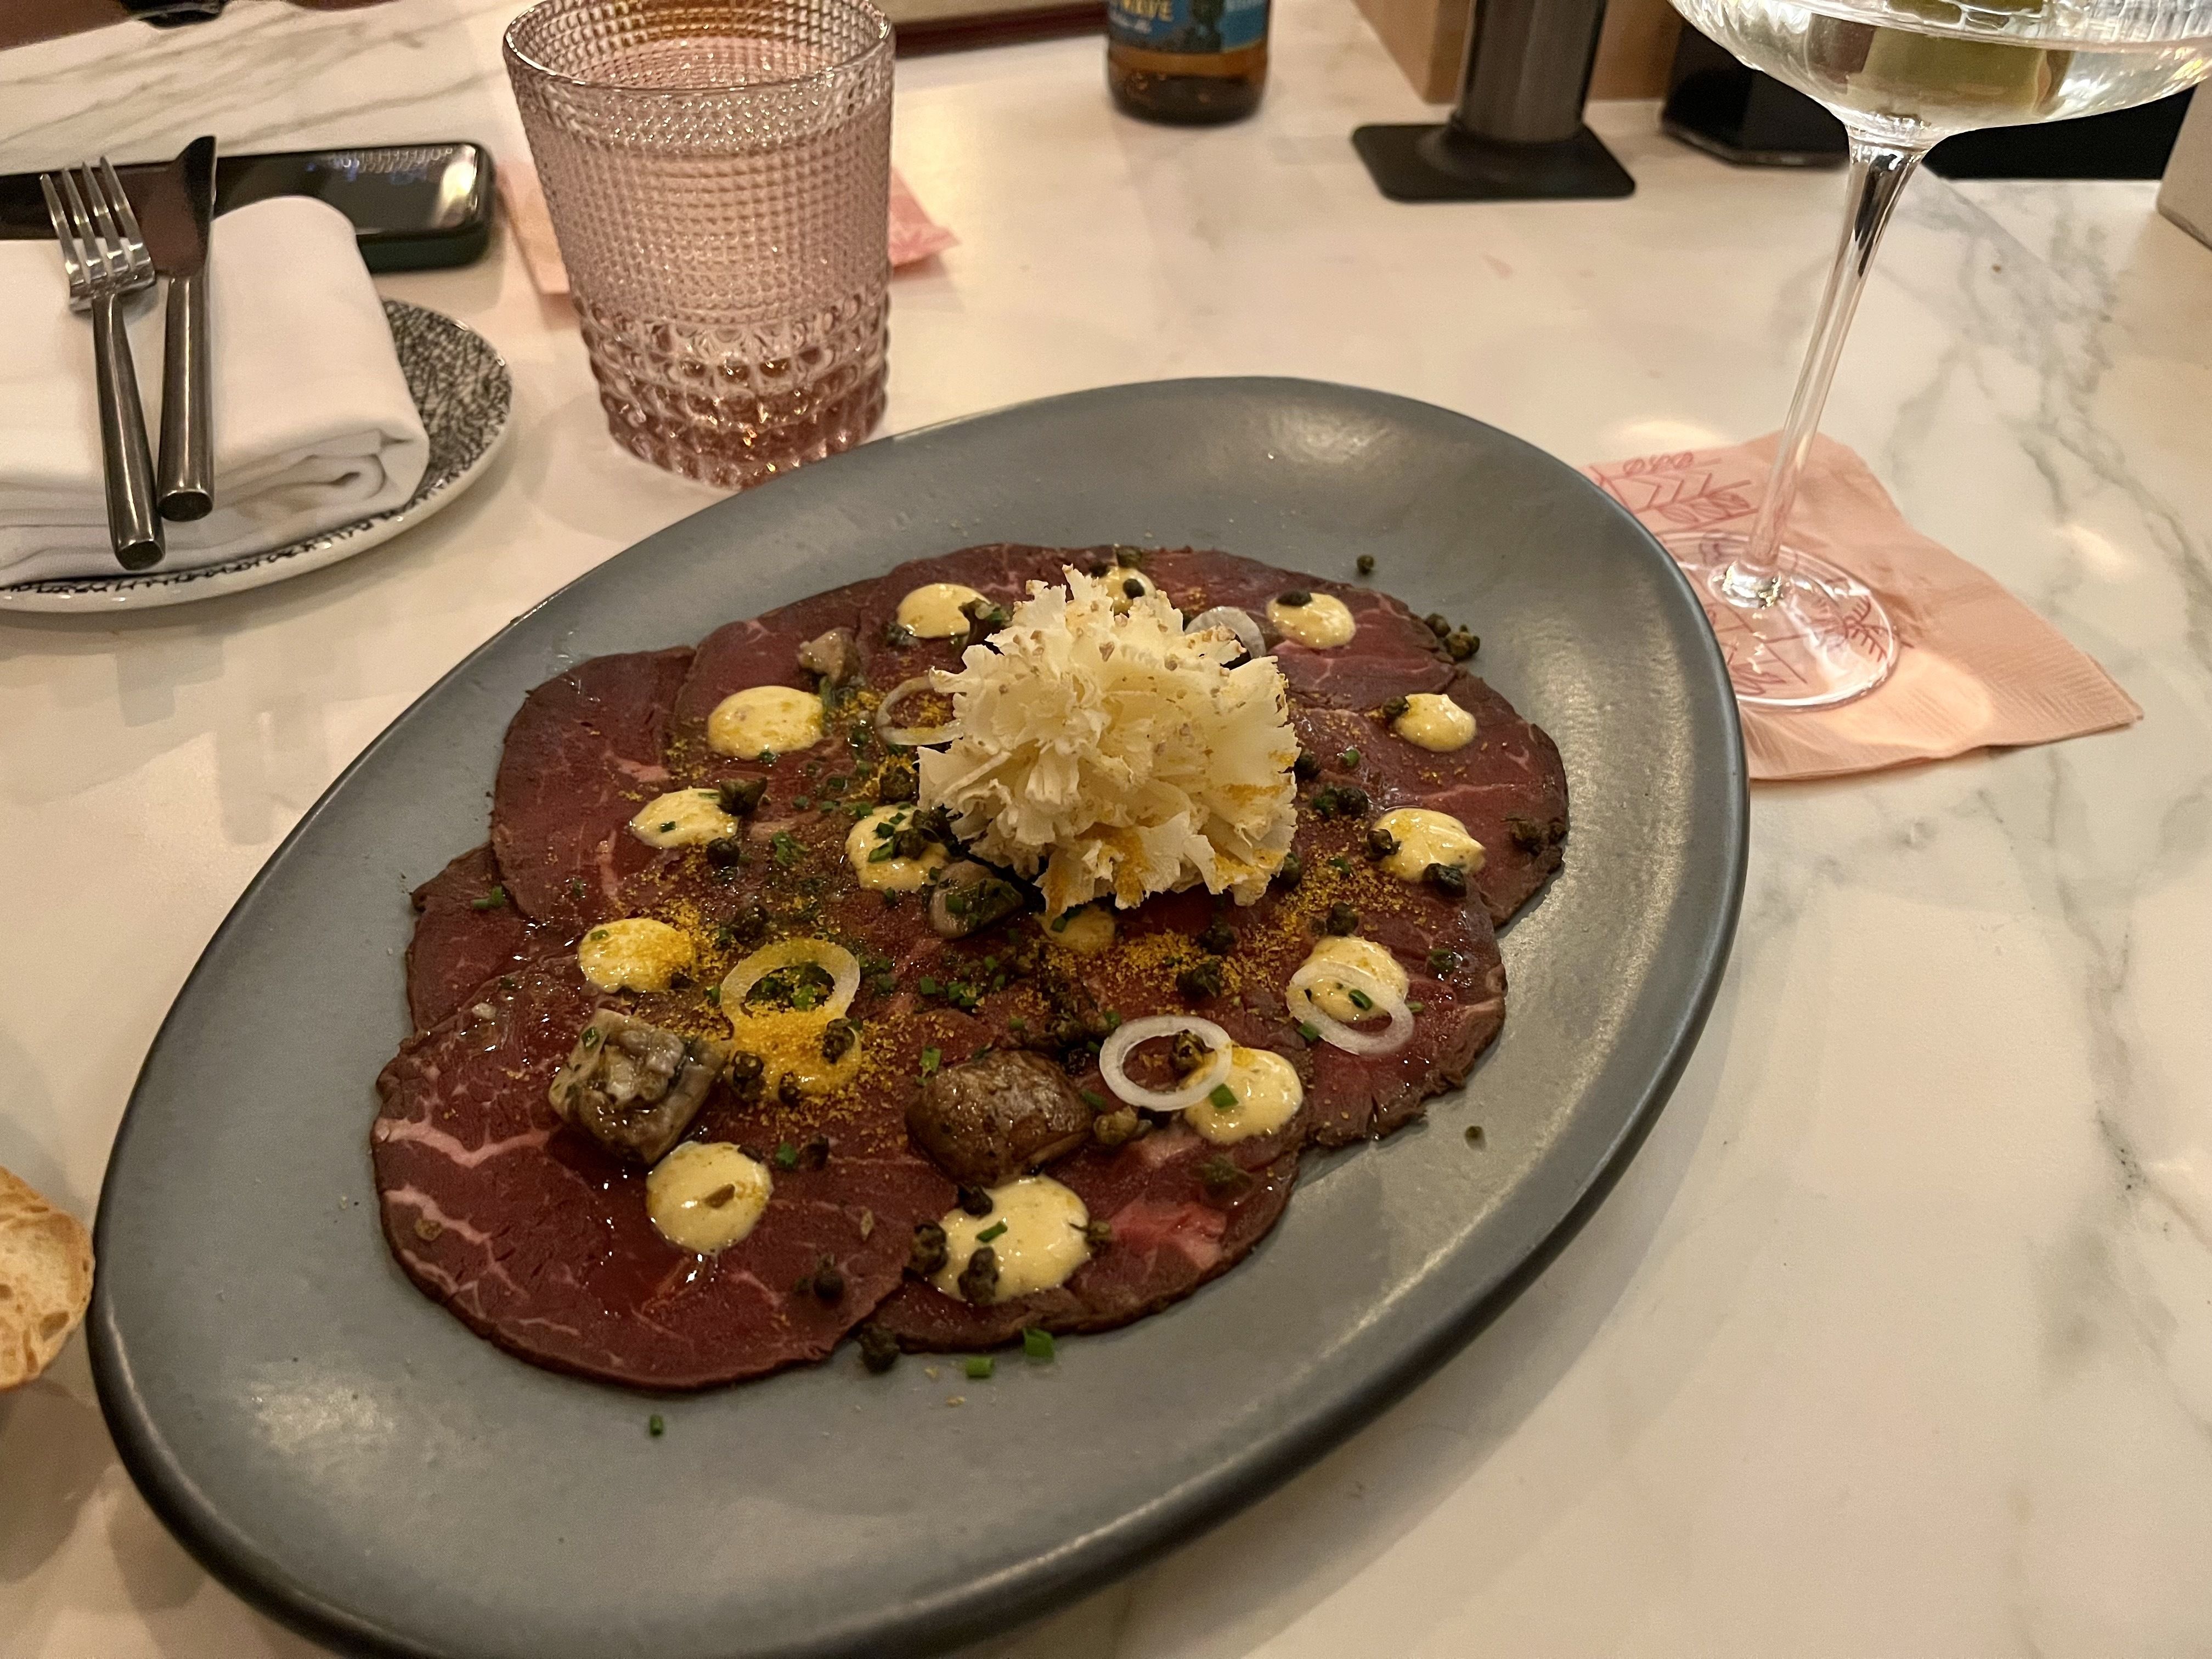 A plate of beef tenderloin